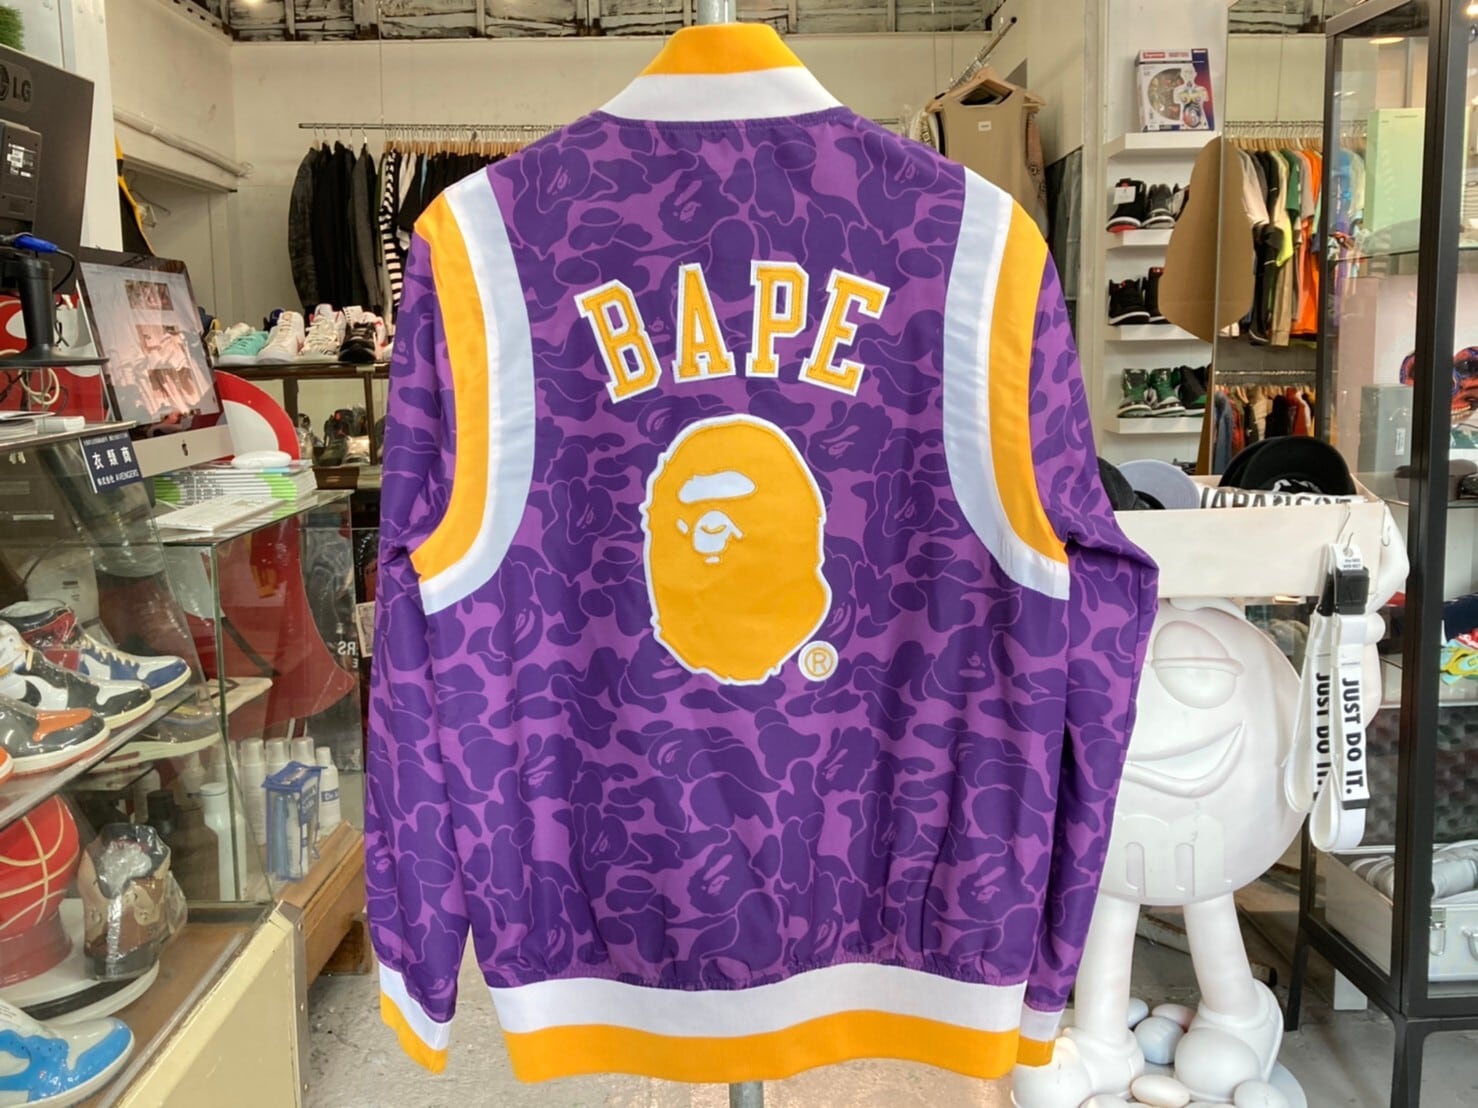 BAPE×NBA Lakersジャケット XL